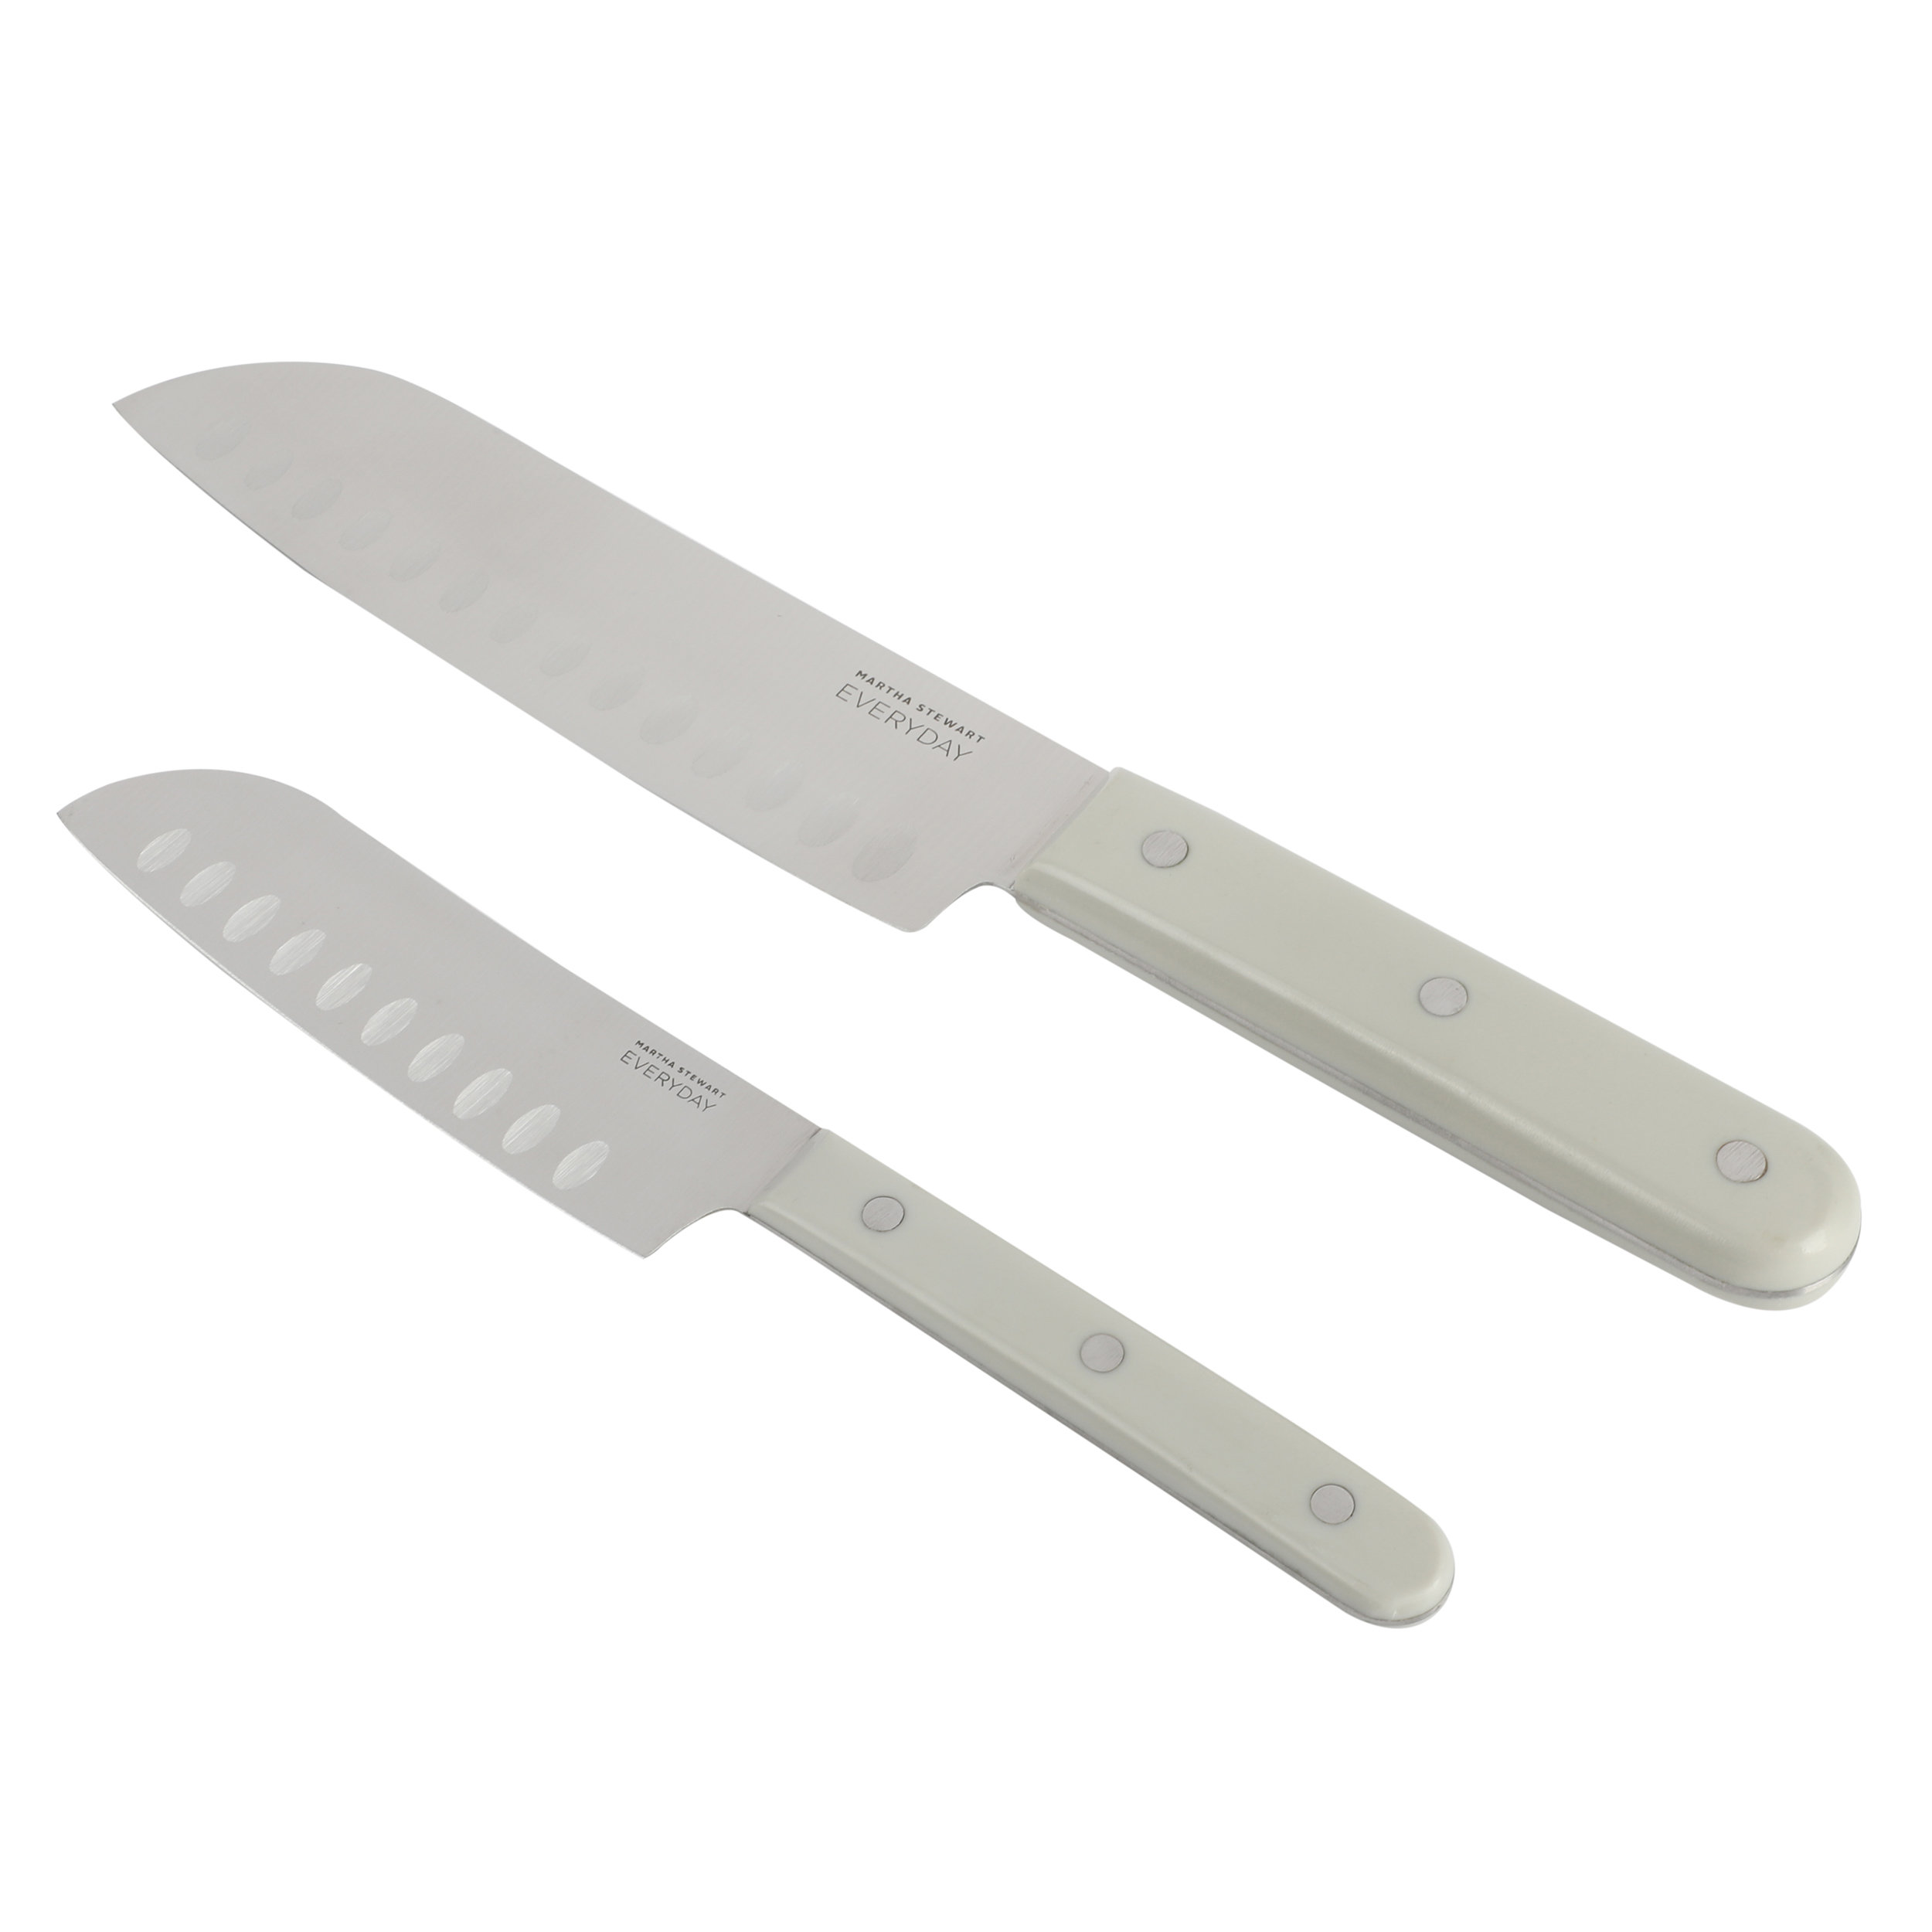 https://assets.wfcdn.com/im/64826028/compr-r85/2285/228577045/martha-stewart-everyday-2-piece-stainless-steel-santoku-knife-set-in-grey.jpg